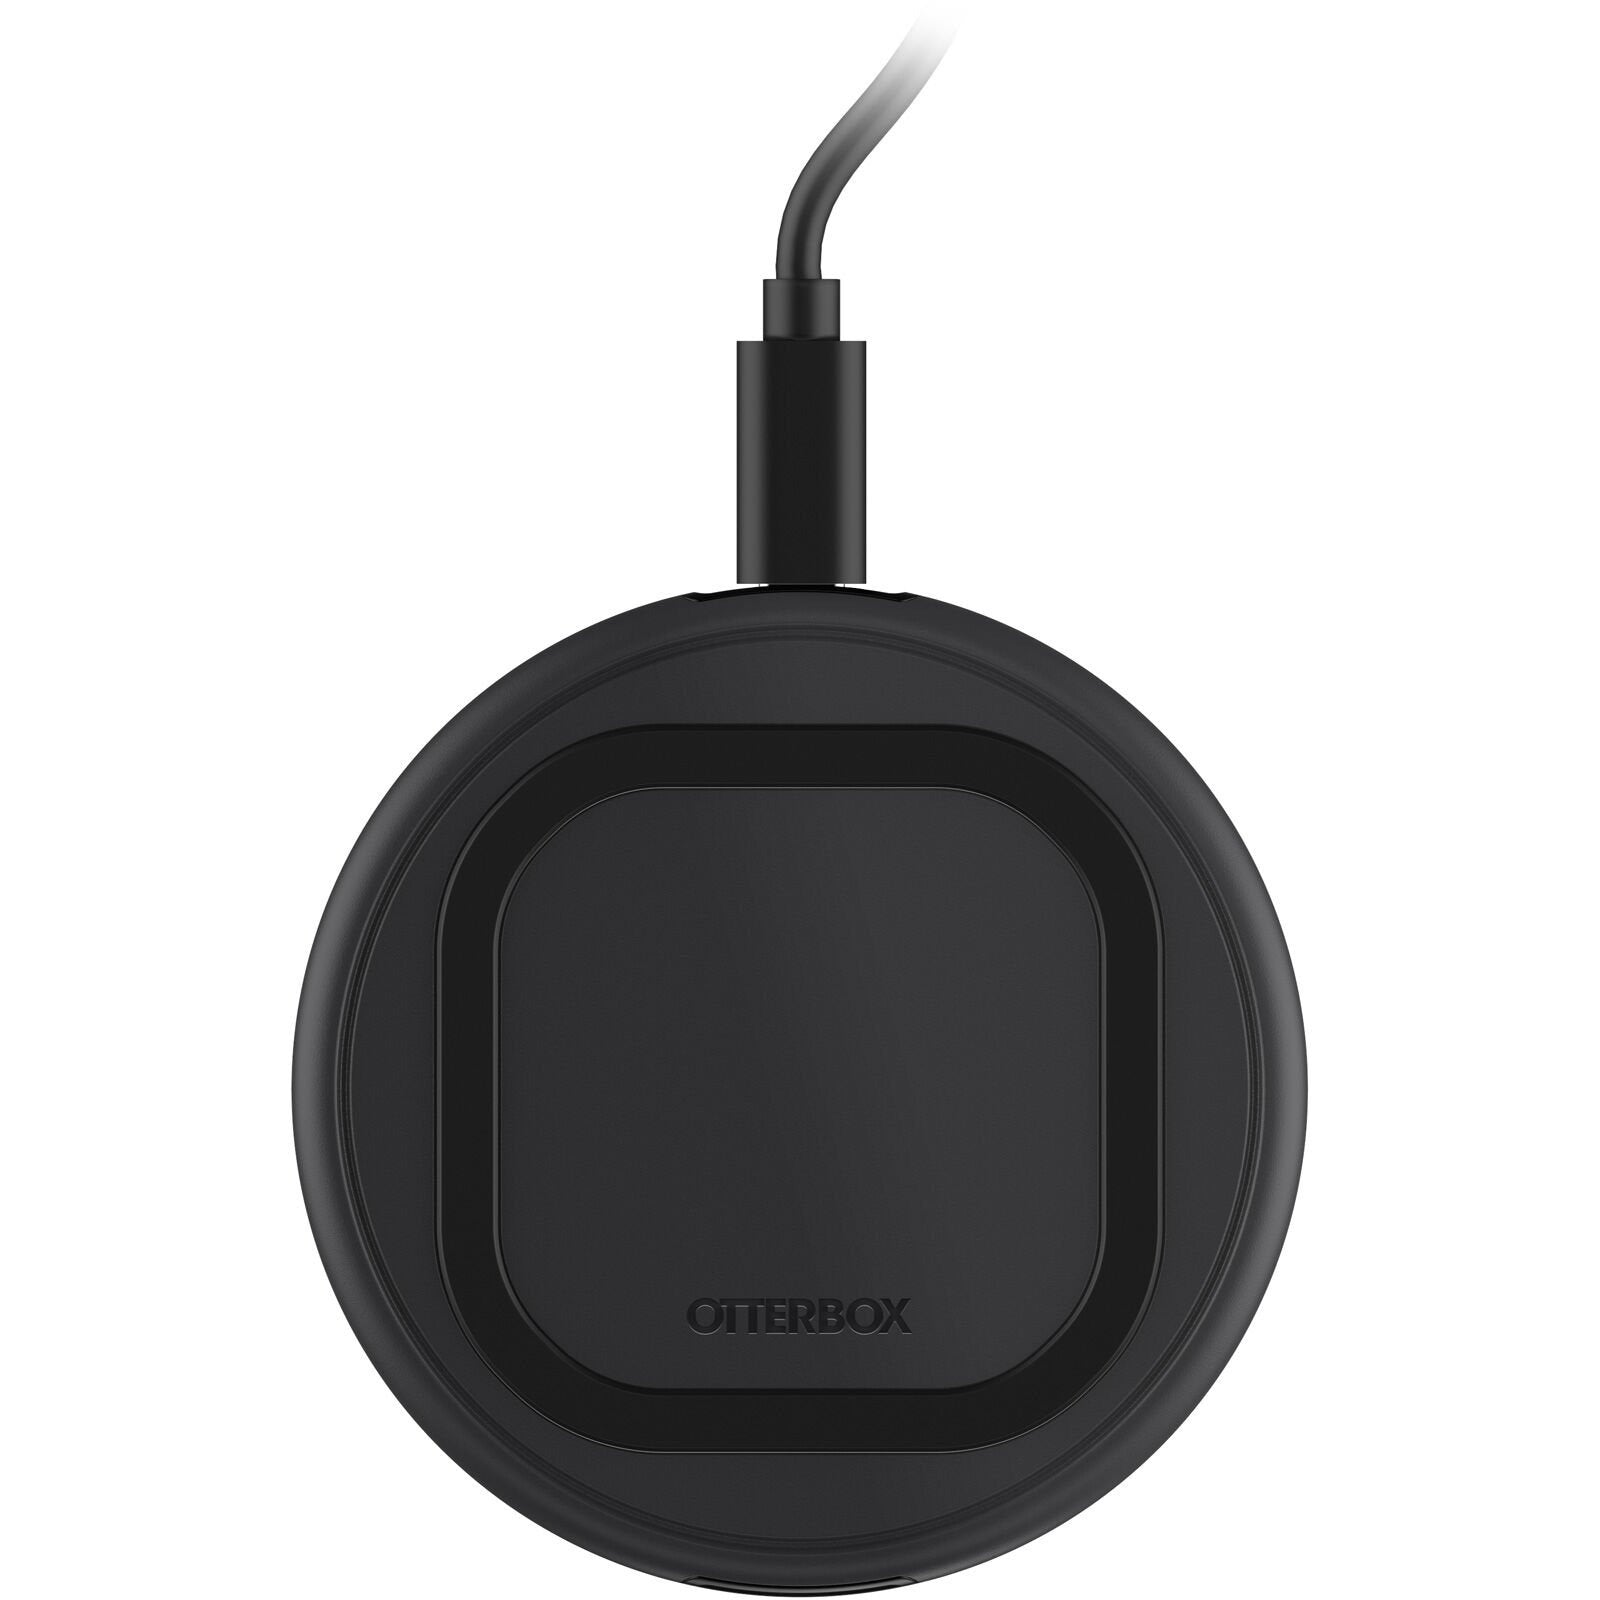 OtterBox Wireless Charging Pad, 10W - Black (New)